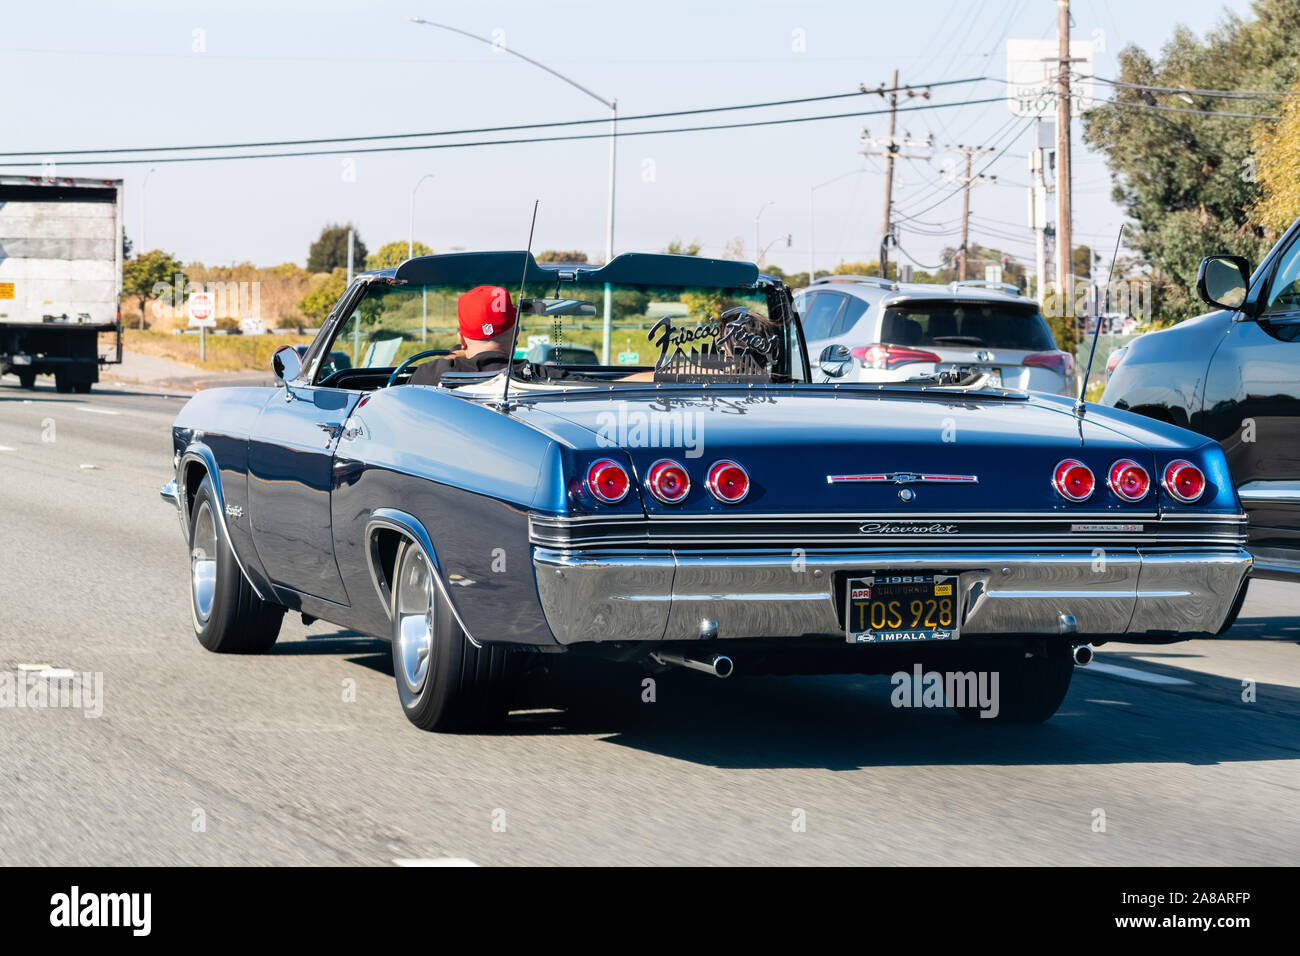 Oct 26, 2019 San Francisco / CA / US - 1965 Chevrolet Impala SS conduciendo en la autopista; Frisco's Finest car club logotipo mostrado en el coche Foto de stock